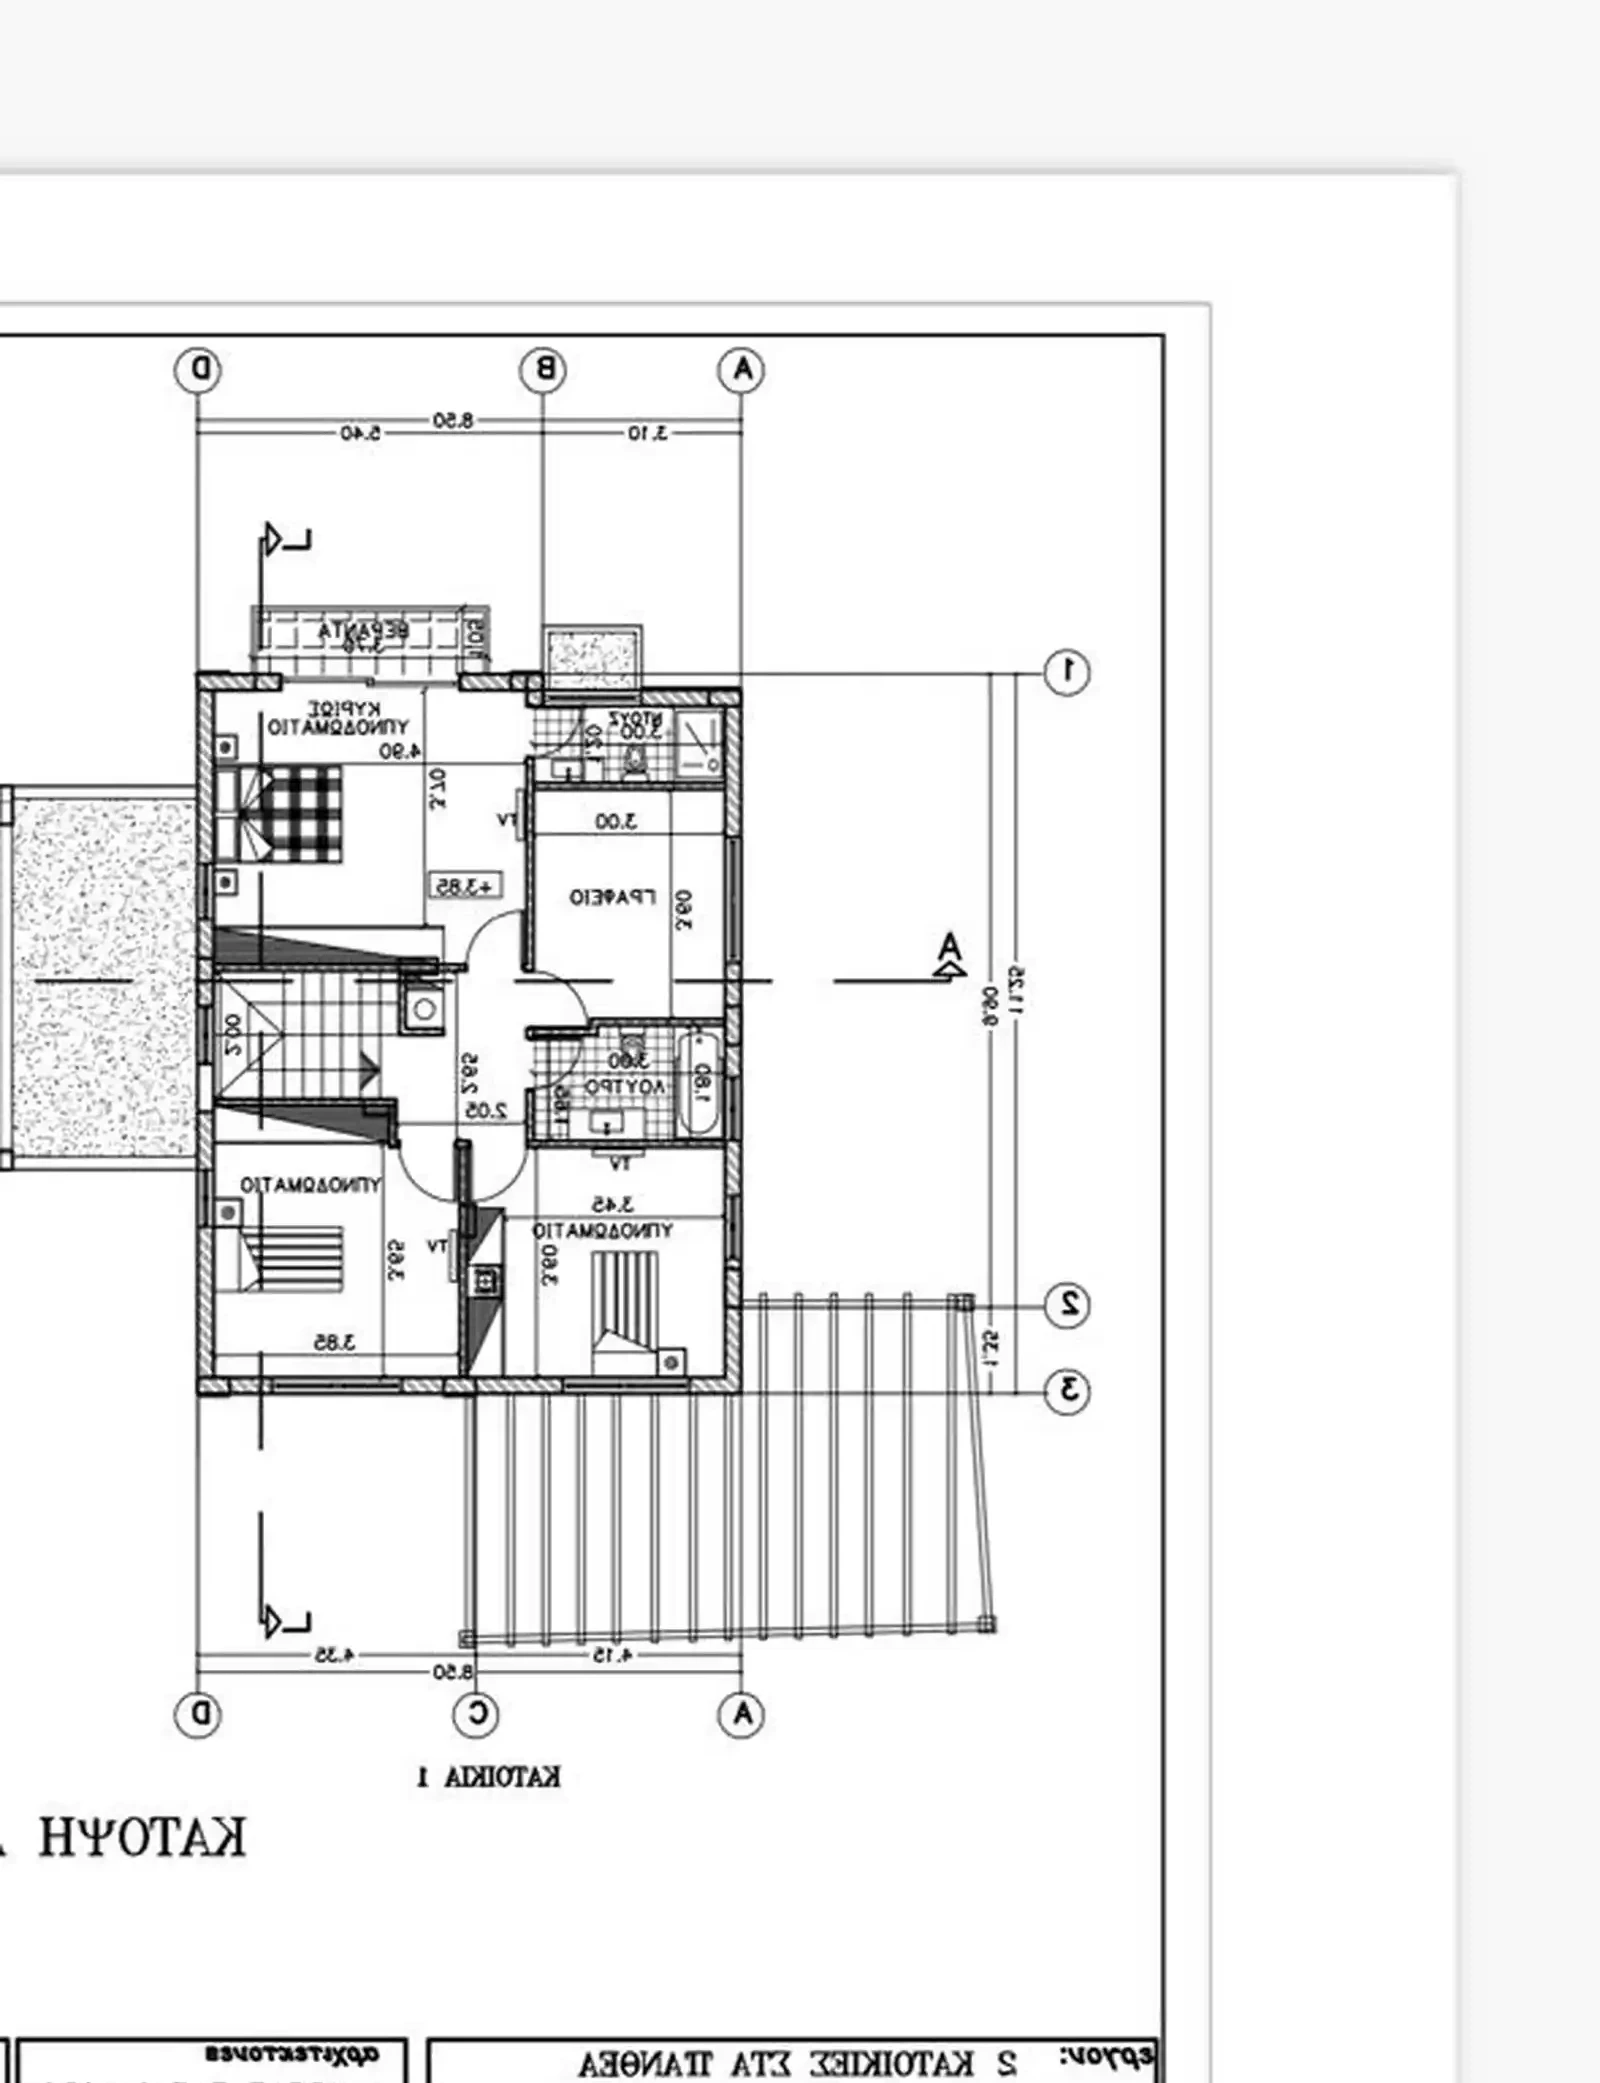 5-bedroom detached house fоr sаle €720.000, image 1